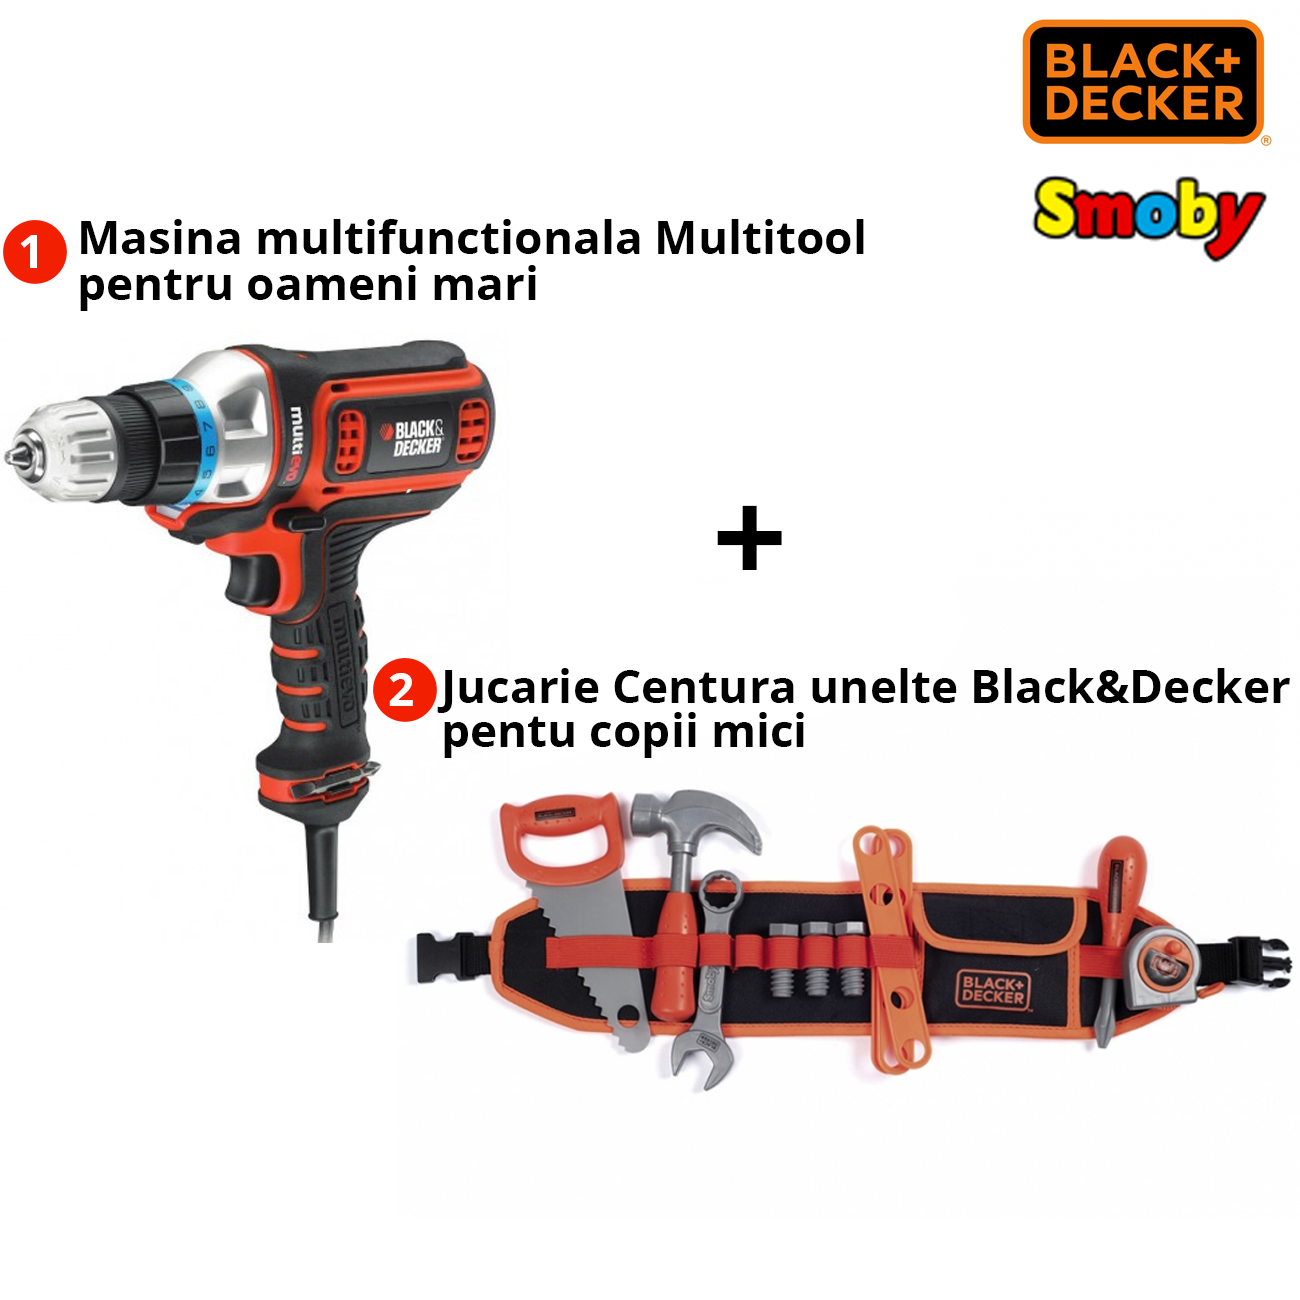 Pachet Black+Decker Masina Multitool MT350K + Jucarie Smoby 7600360192